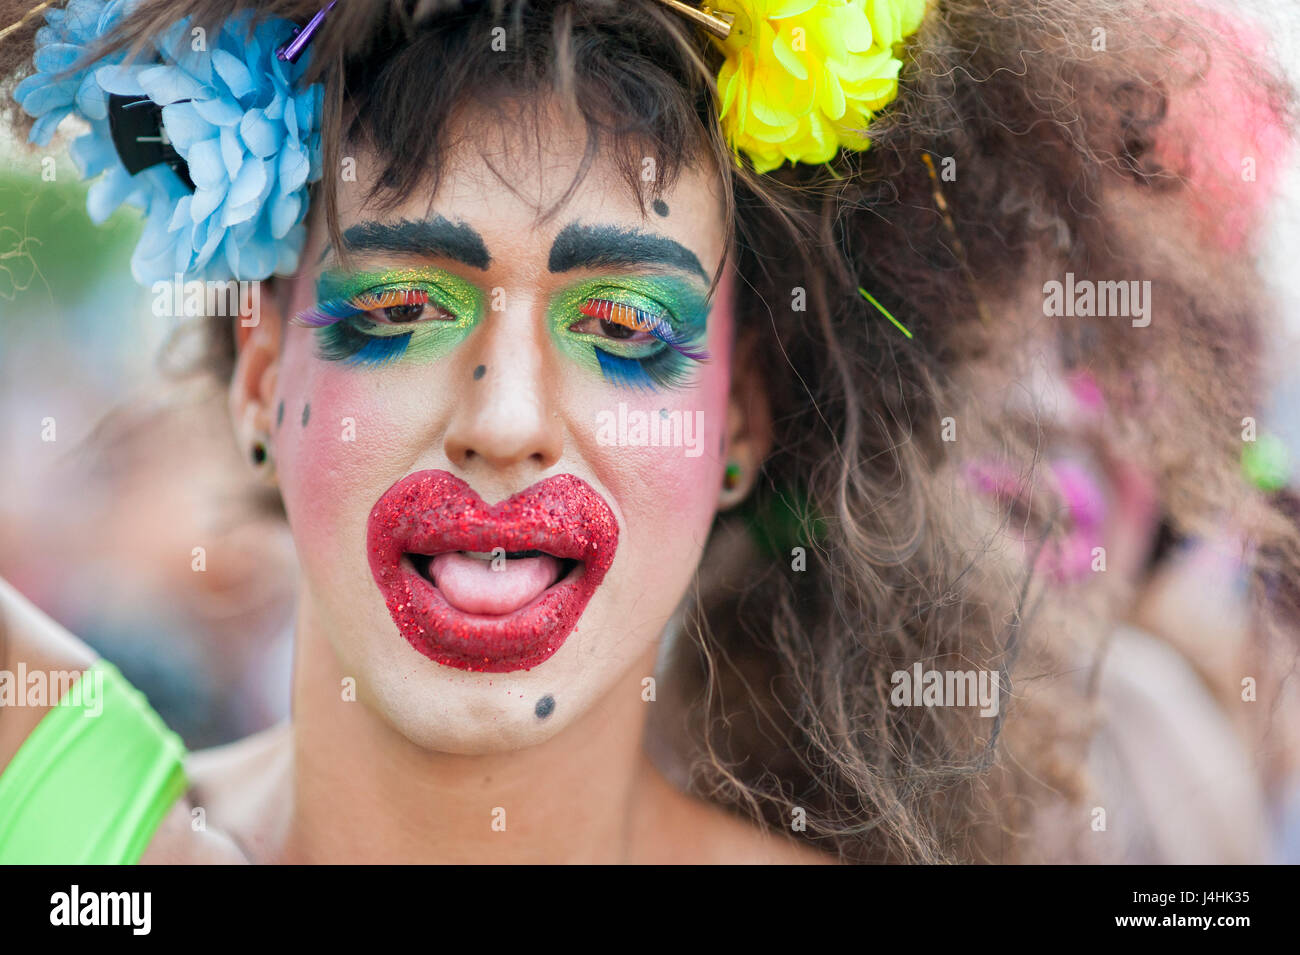 RIO DE JANEIRO - Febrero 25, 2017: Un joven brasileño celebra el carnaval  con colores brillantes de maquillaje y una peluca despeinada en una fiesta  en la calle en Ipanema Fotografía de stock - Alamy